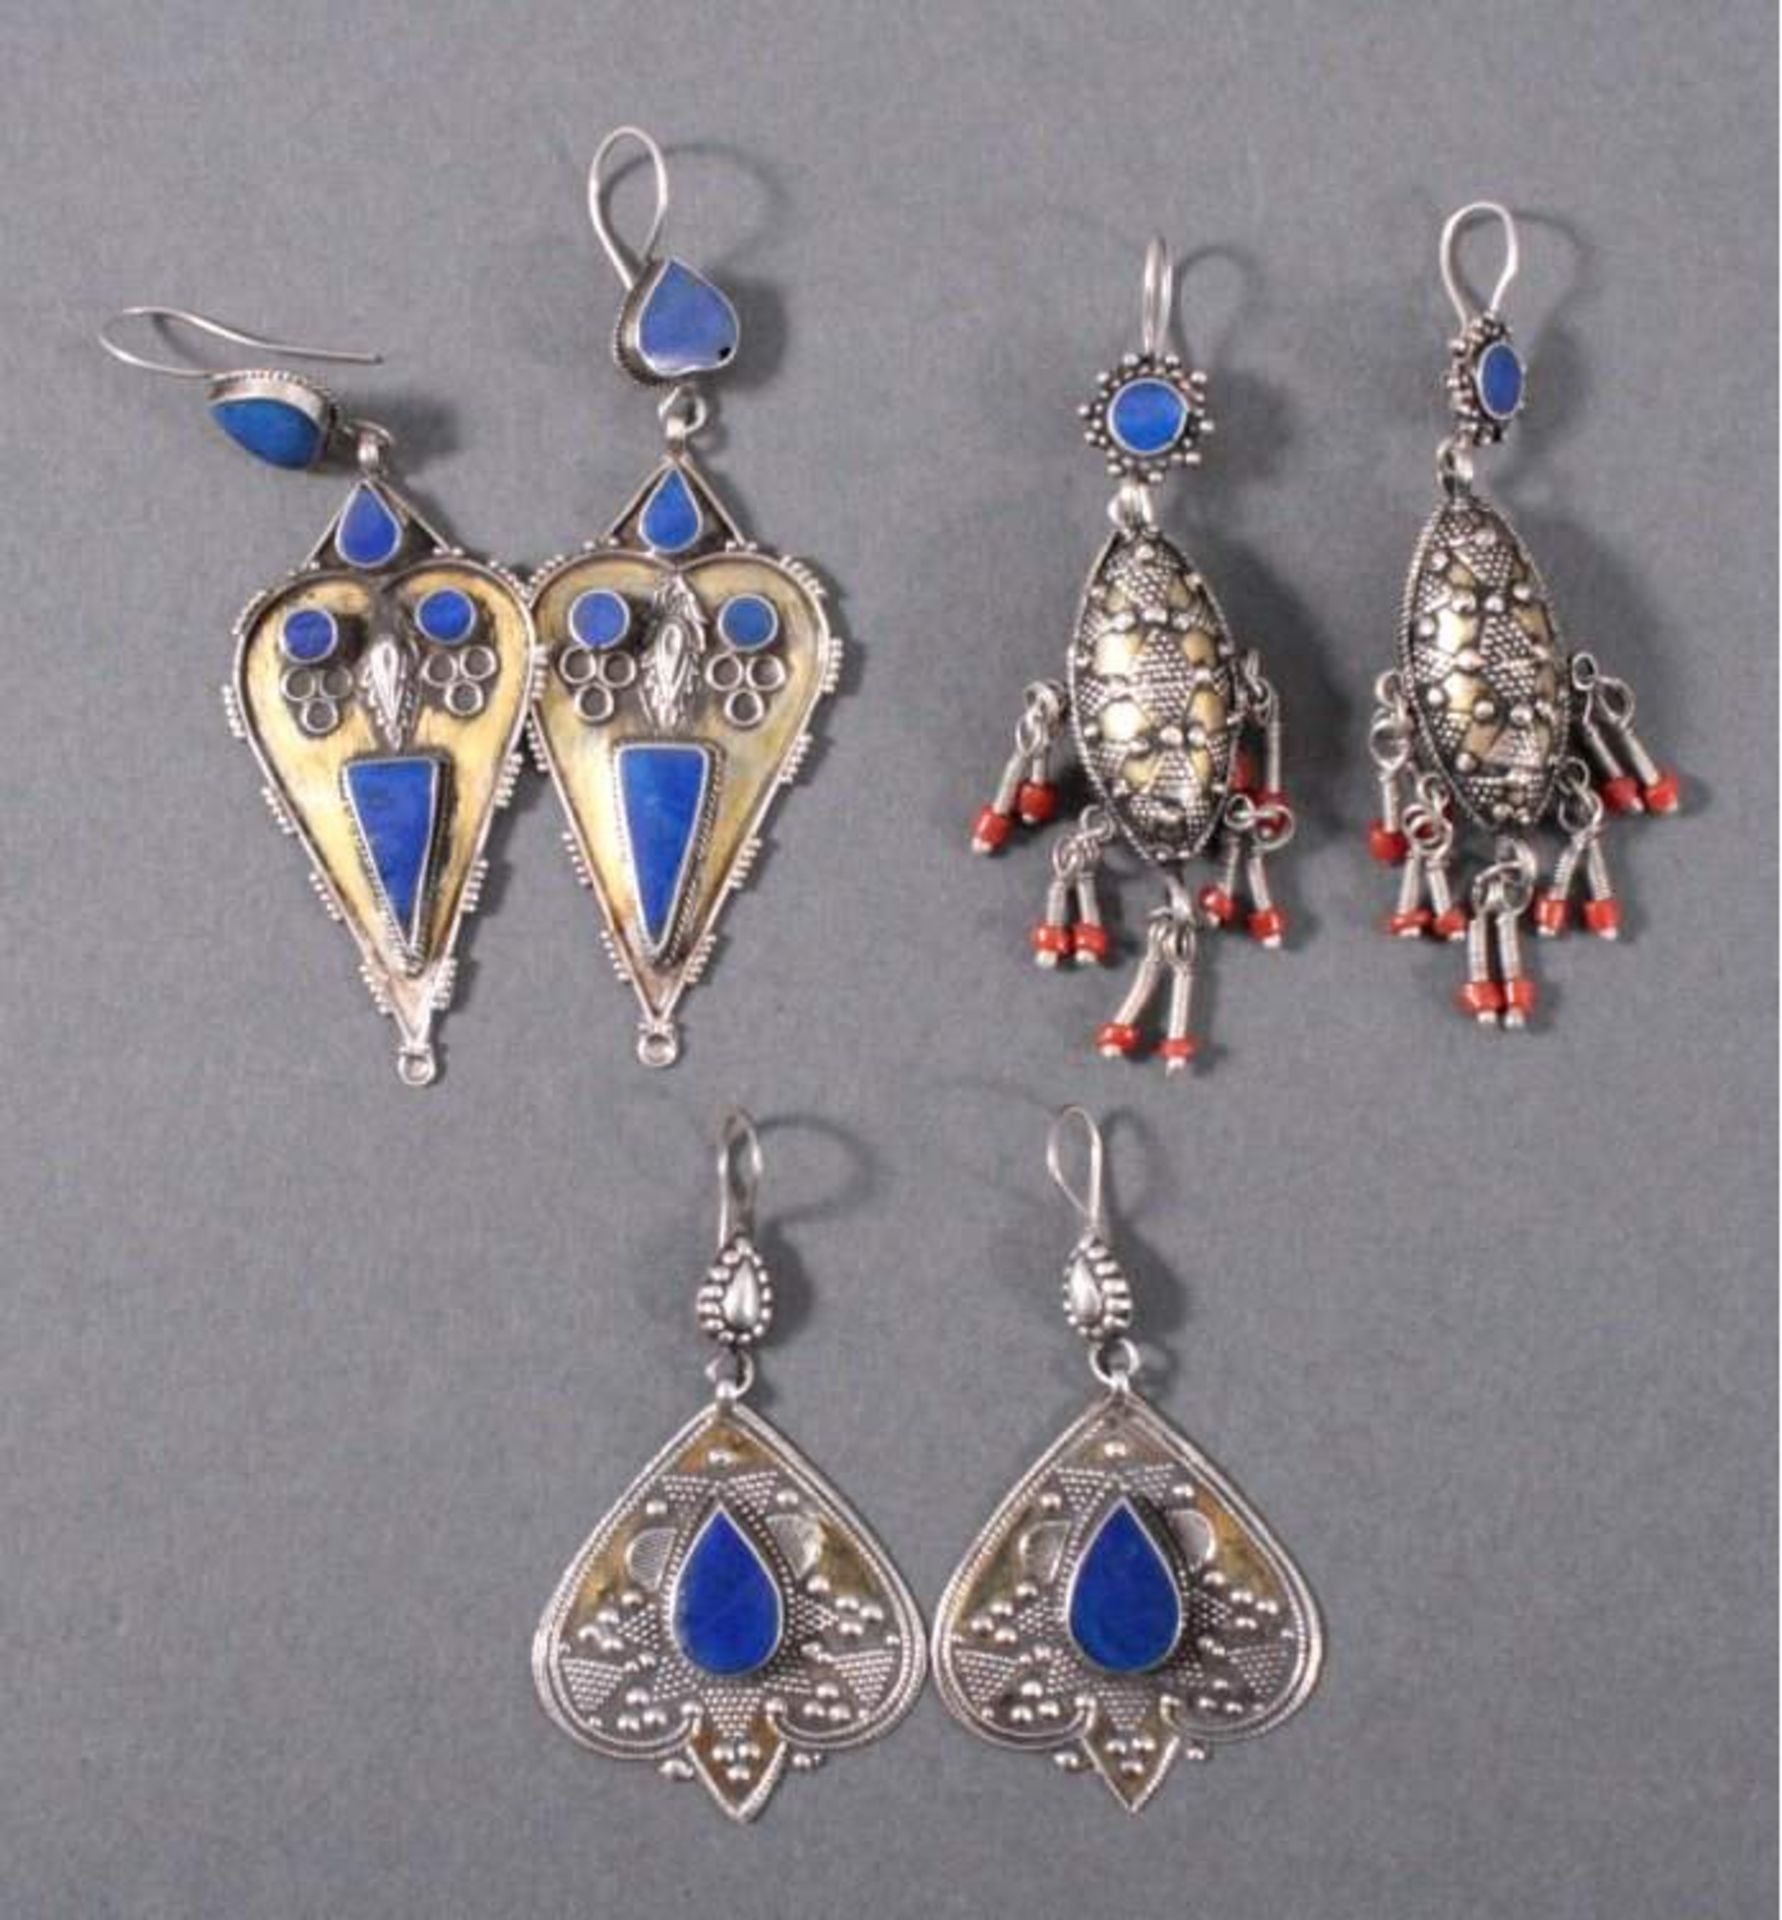 3 Paar Ohrgehänge, alter NomadenschmuckAus Silber gerfertigt, feuervergoldet, besetzt mitLapislazuli